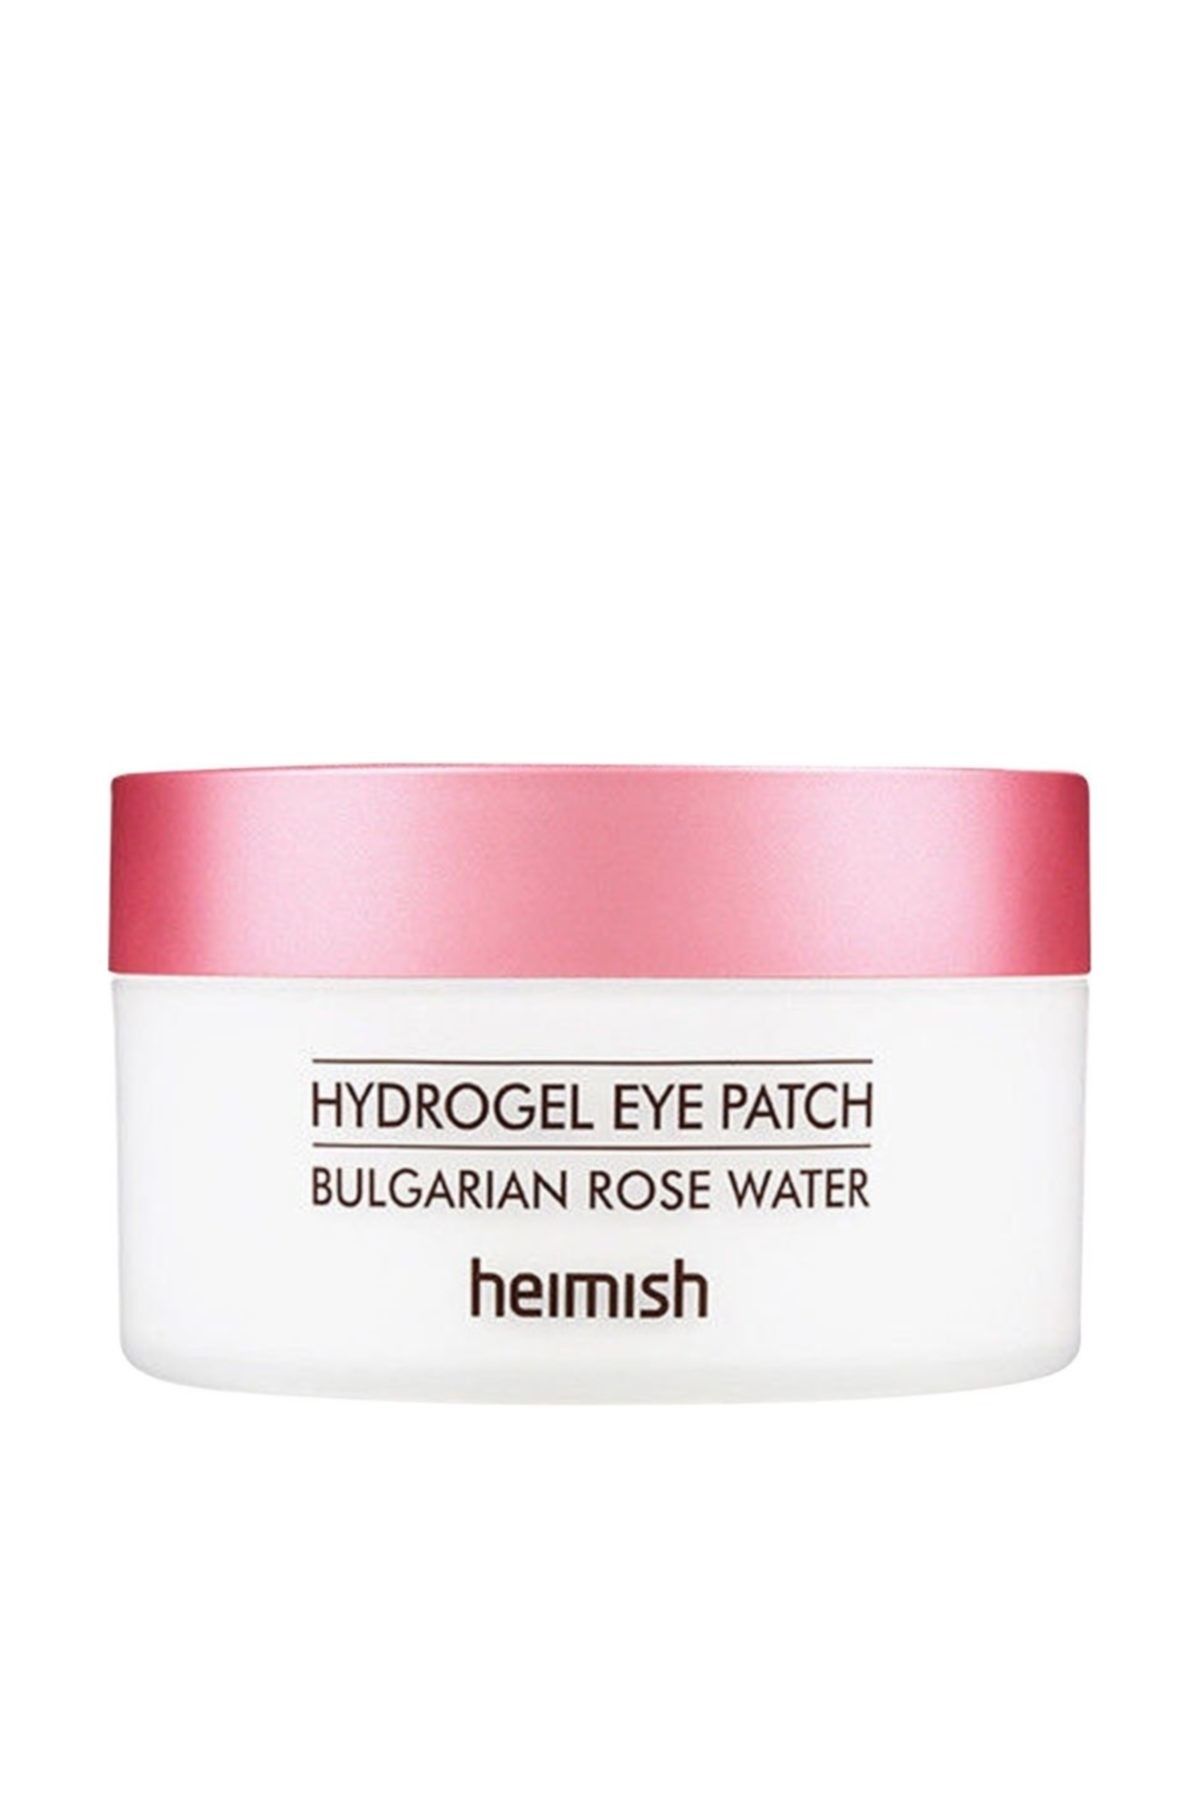 Heimish Bulgarian Rose Water Hydrogel Eye Patch - Göz & Özel Bölge Maskeleri 8809481760753